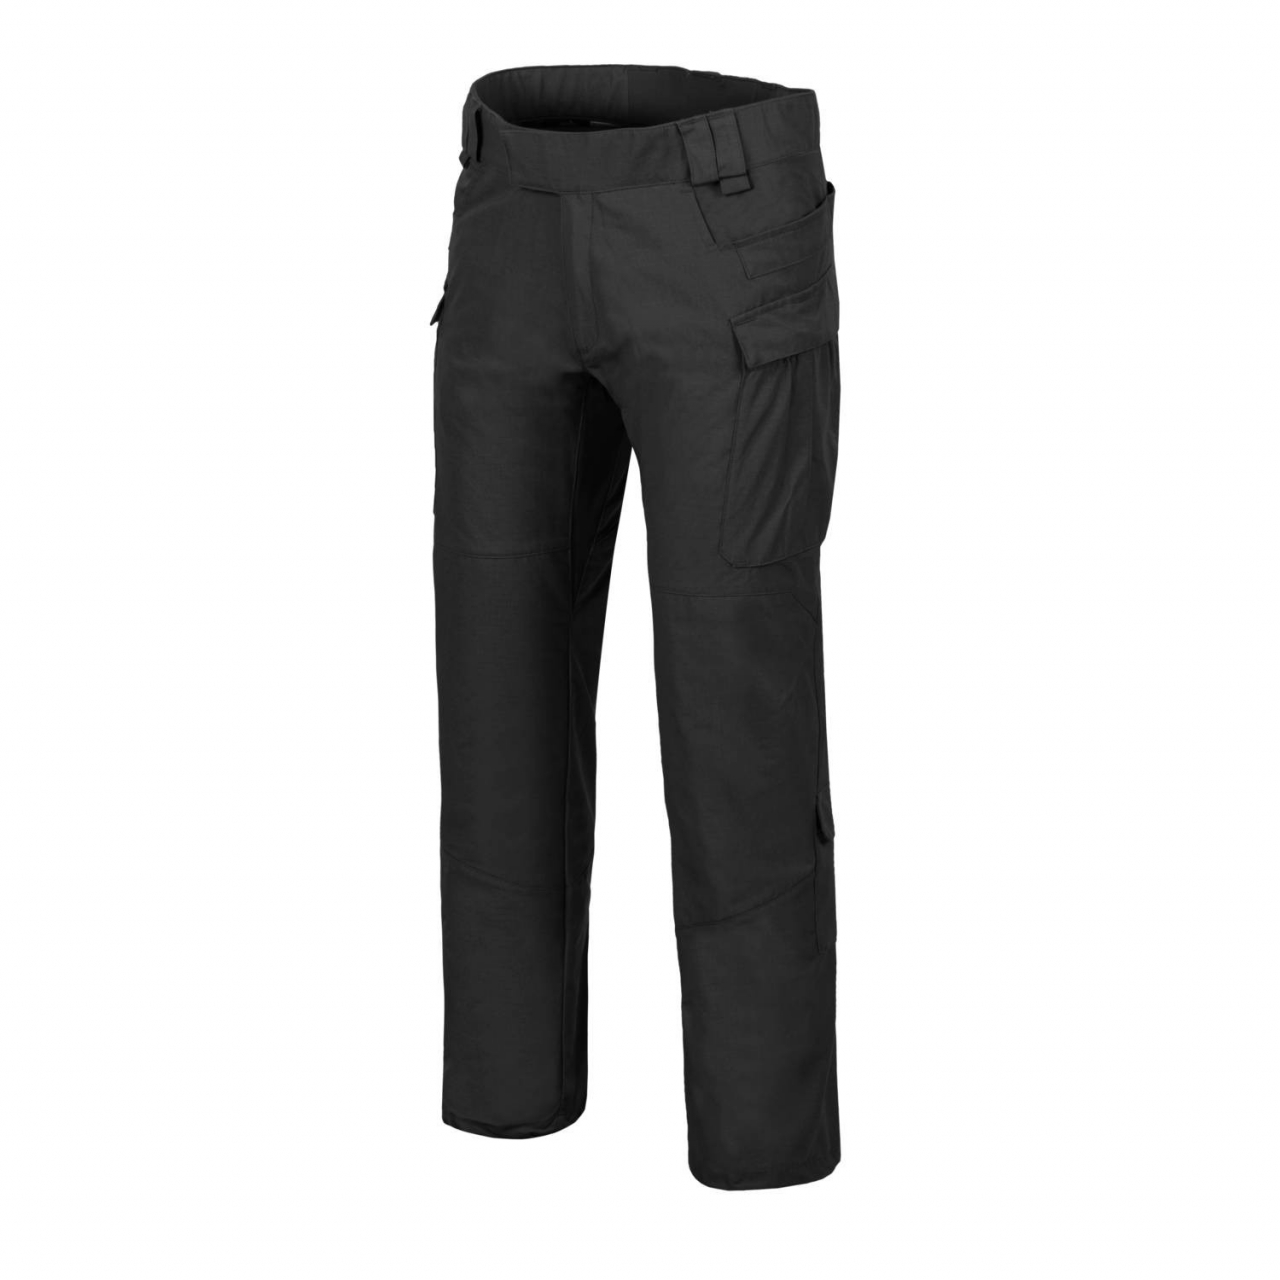 Kalhoty Helikon MBDU NyCo Ripstop - černé, L